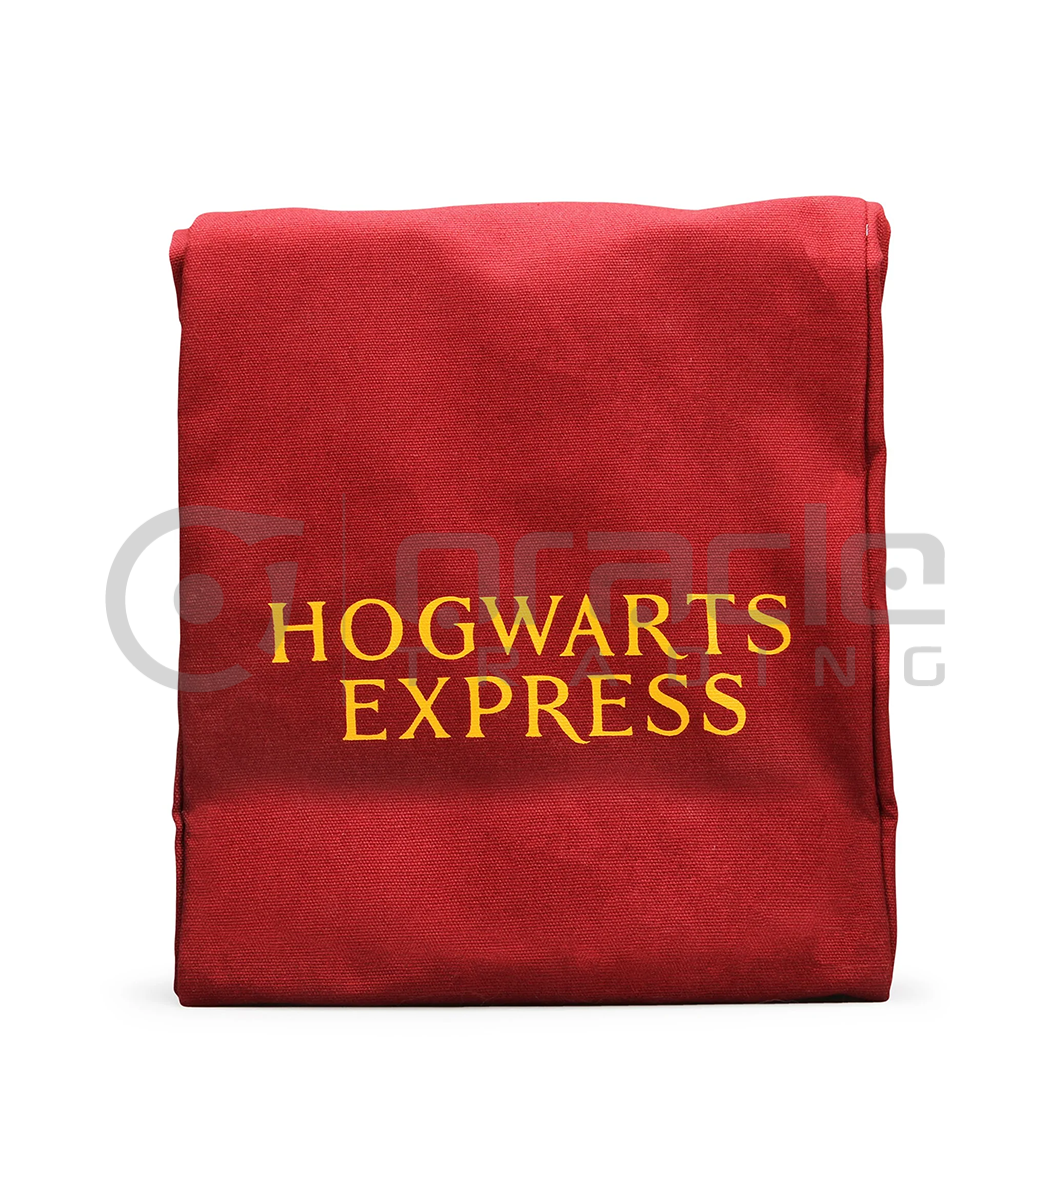 lunch bag harry potter hogwarts express hpx085 b